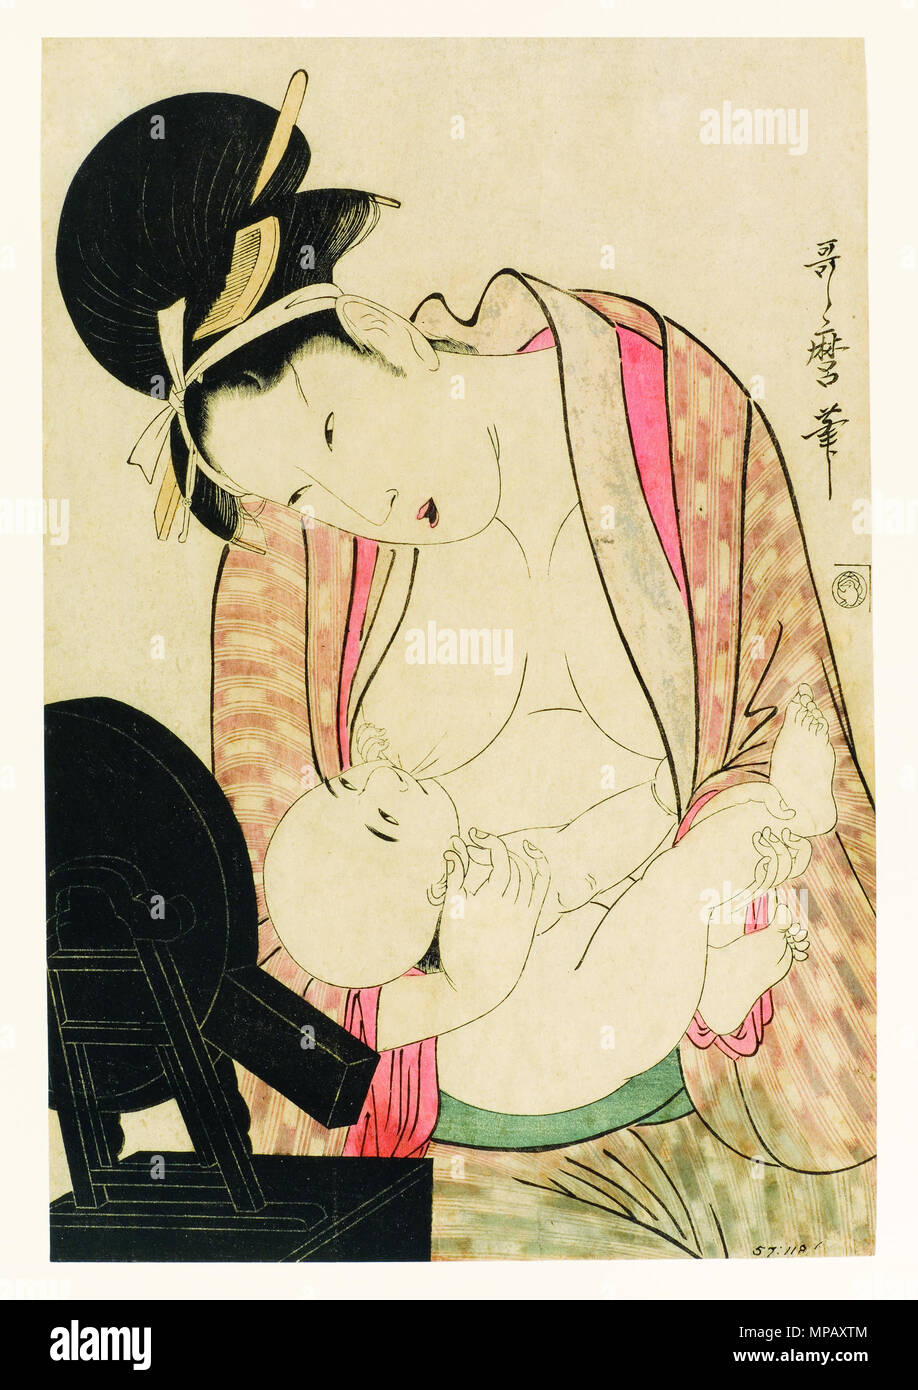 . English: Accession Number: 1957.118 Display Artist: Kitagawa Utamaro Display Title: Mother nursing her child before a mirror stand Creation Date: ca. 1800-1804 Height: 14 13/16 in. Width: 9 3/4 in. Display Dimensions: 14 13/16 in. x 9 3/4 in. (37.62 cm x 24.77 cm) Credit Line: Bequest of Mrs. Cora Timken Burnett Label Copy: Esta estampa pertenece a una serie del Tokaido llamada reisho por el estilo caligrfico de letras cuadradas con el cual est escrito el ttulo en rojo sobre la cartela grande en la derecha superior. Collection: <a href='http://www.sdmart.org/art/our-collection/asian-art' rel Stock Photo